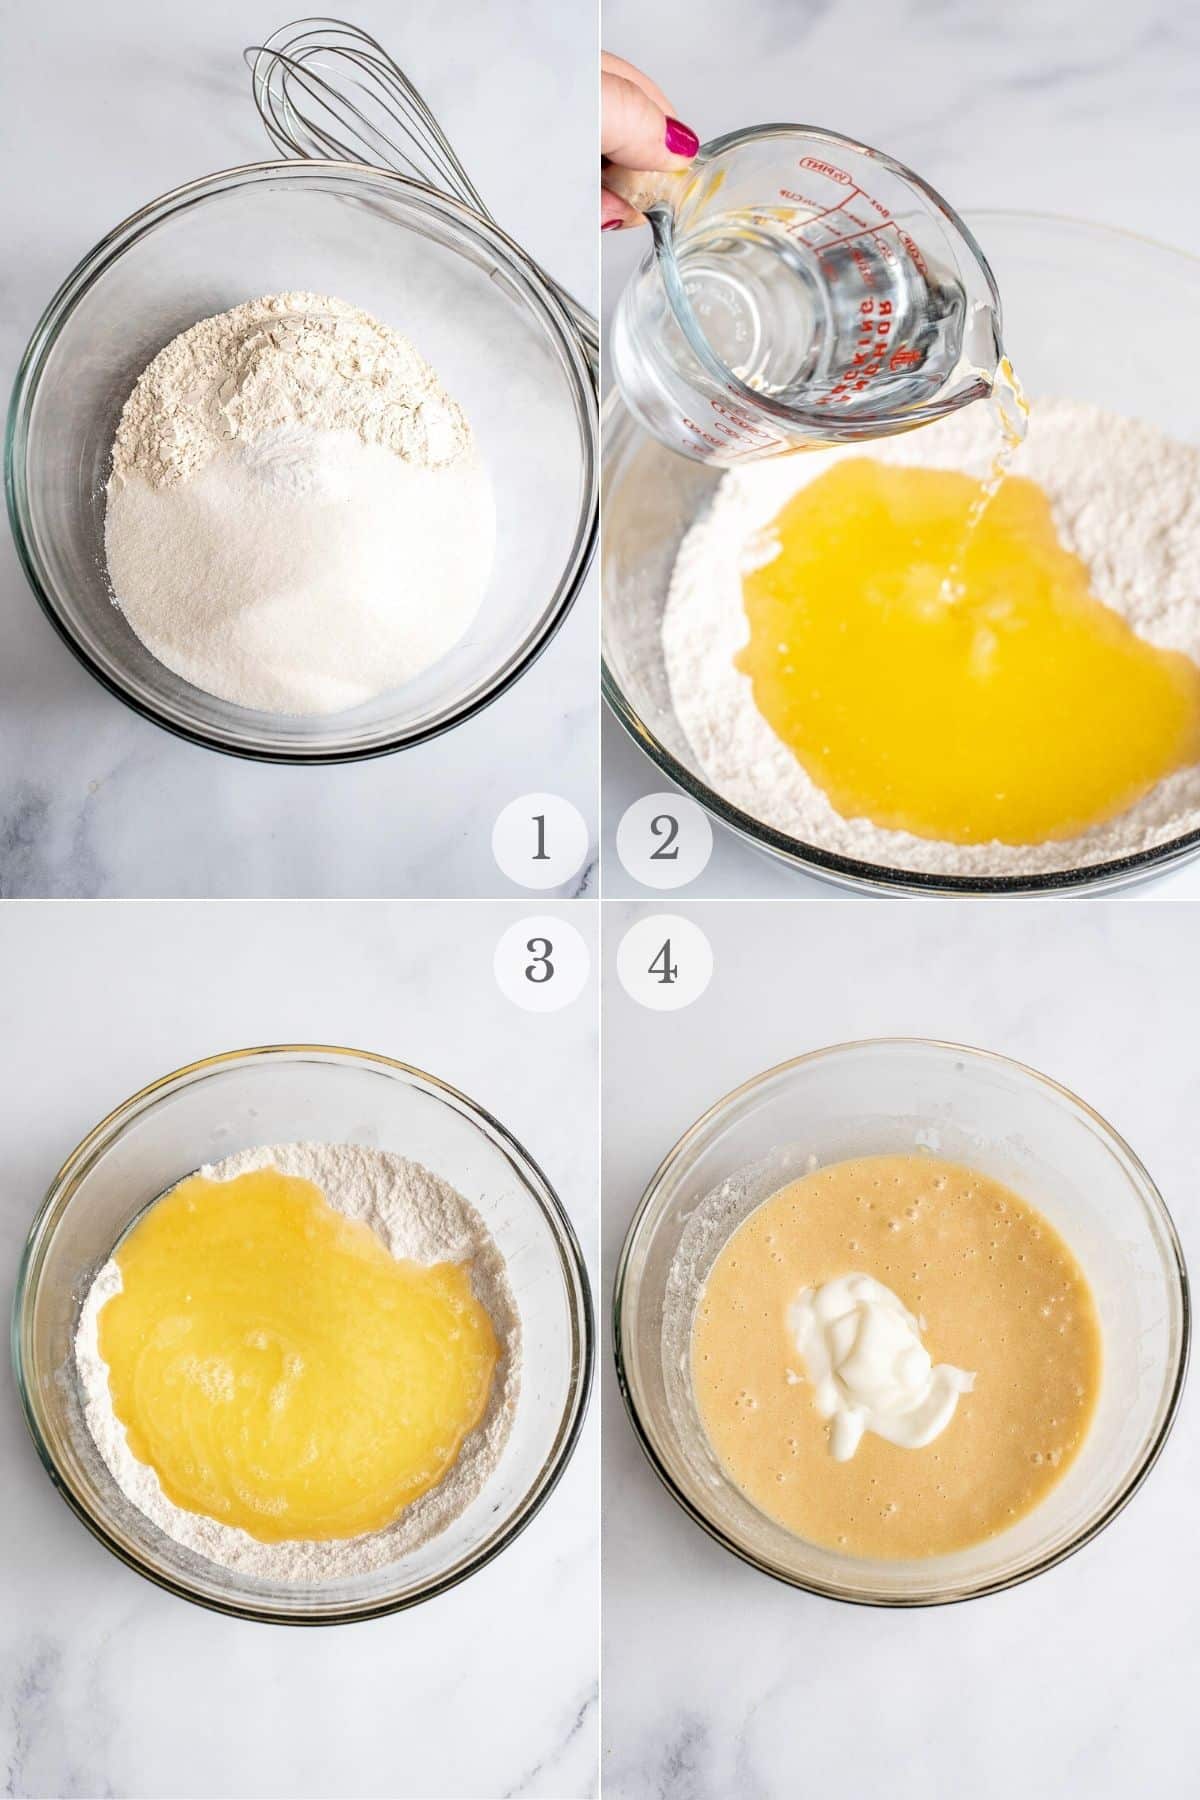 funfetti cake recipe steps 1-4